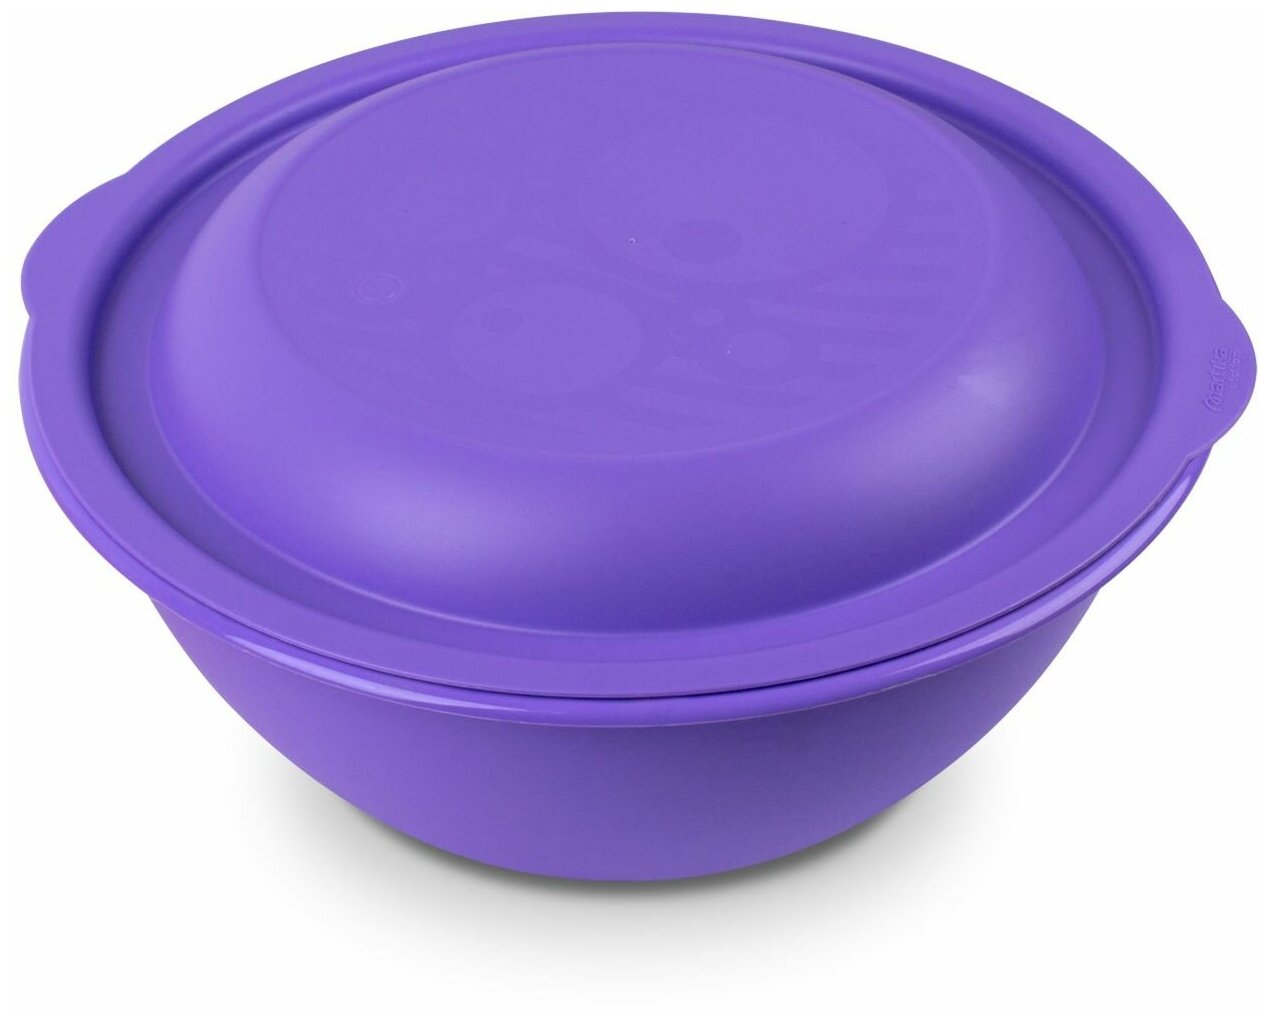 Миска - салатница Martika 3л с крышкой фиолетовая